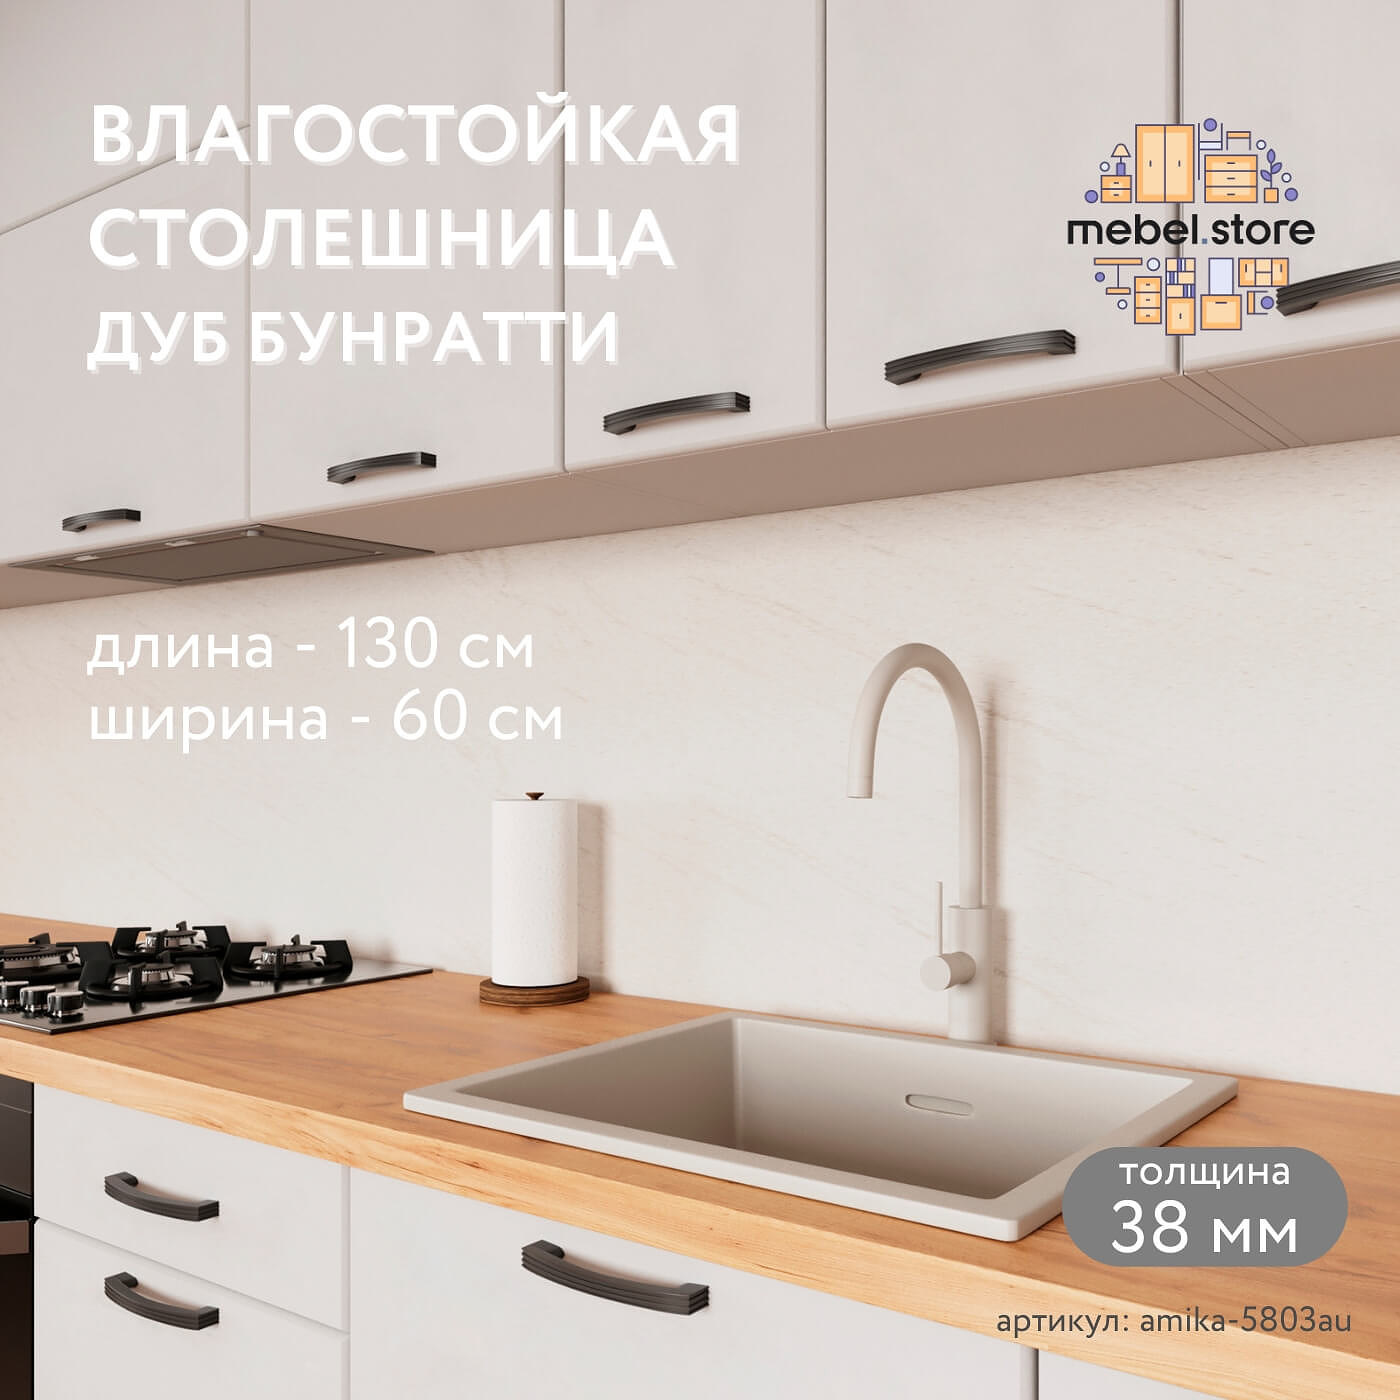 Столешница Амика-5803au минимализм для кухни - фото 1 large